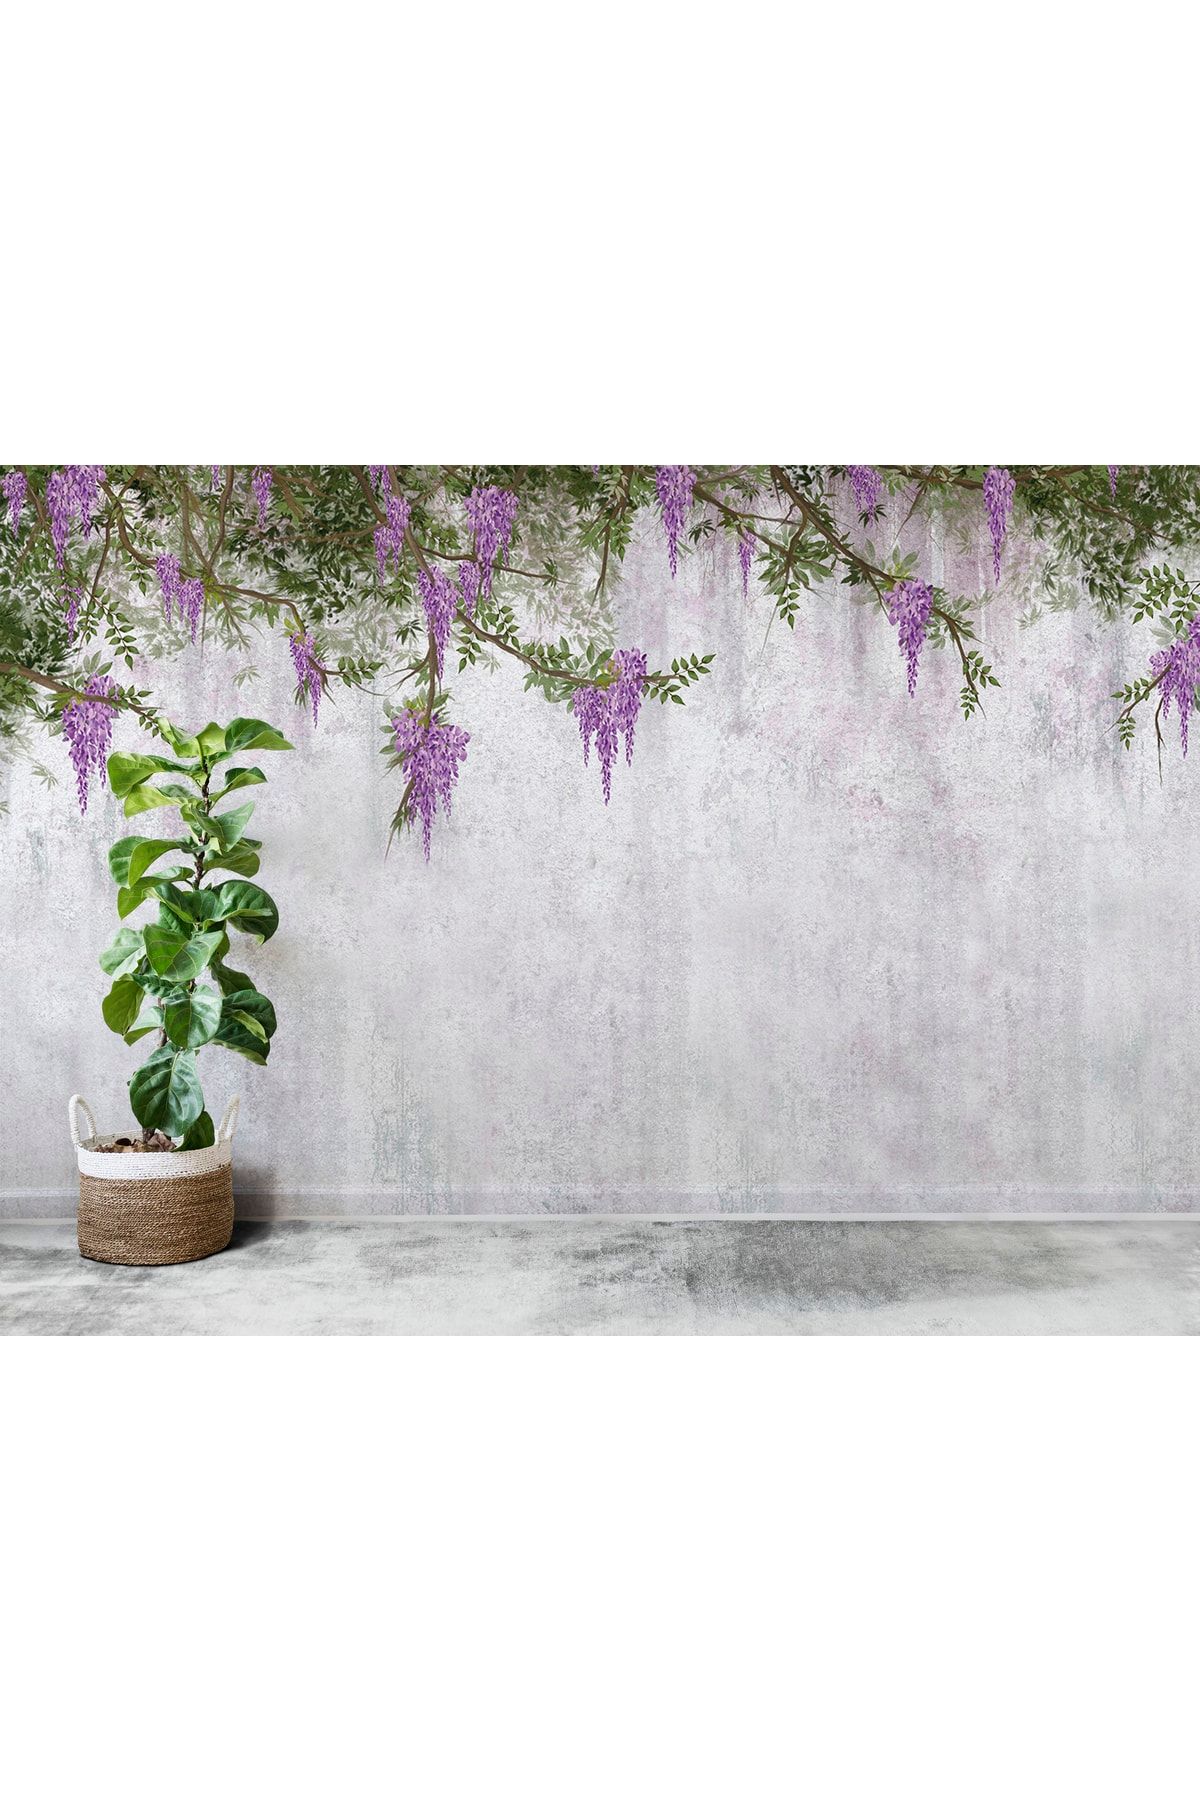 LOTUS AURA Sümbül Çiçeği Duvar Kağıdı, Mor Salkımlı Çiçekler Duvar Resmi